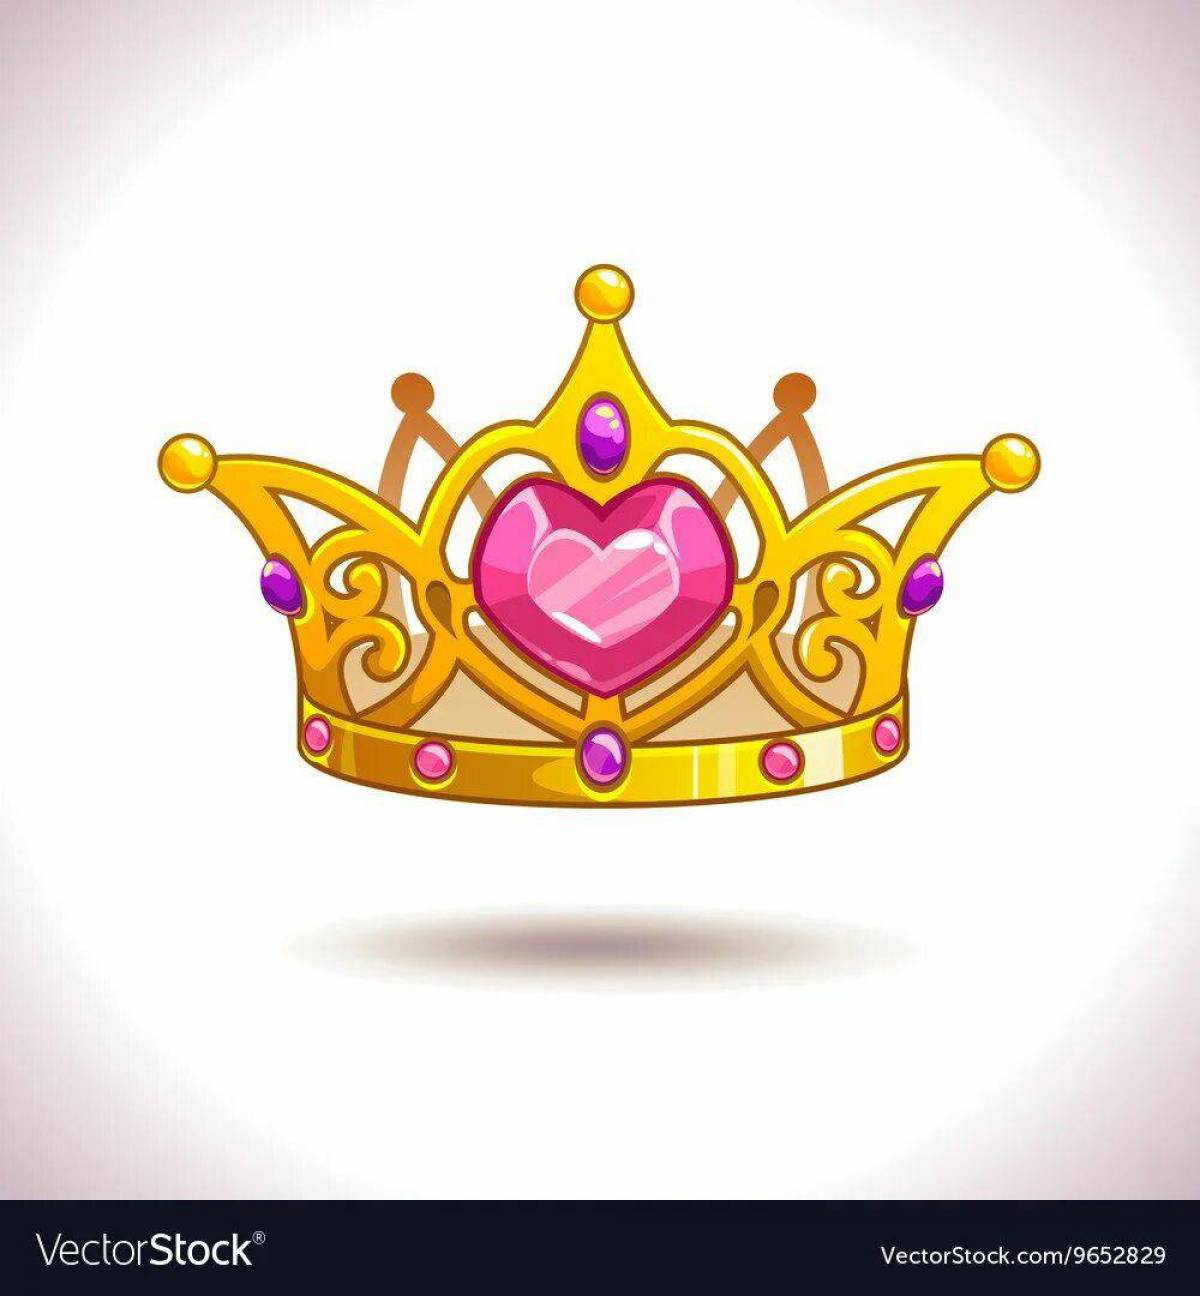 Принцесса с короной #11